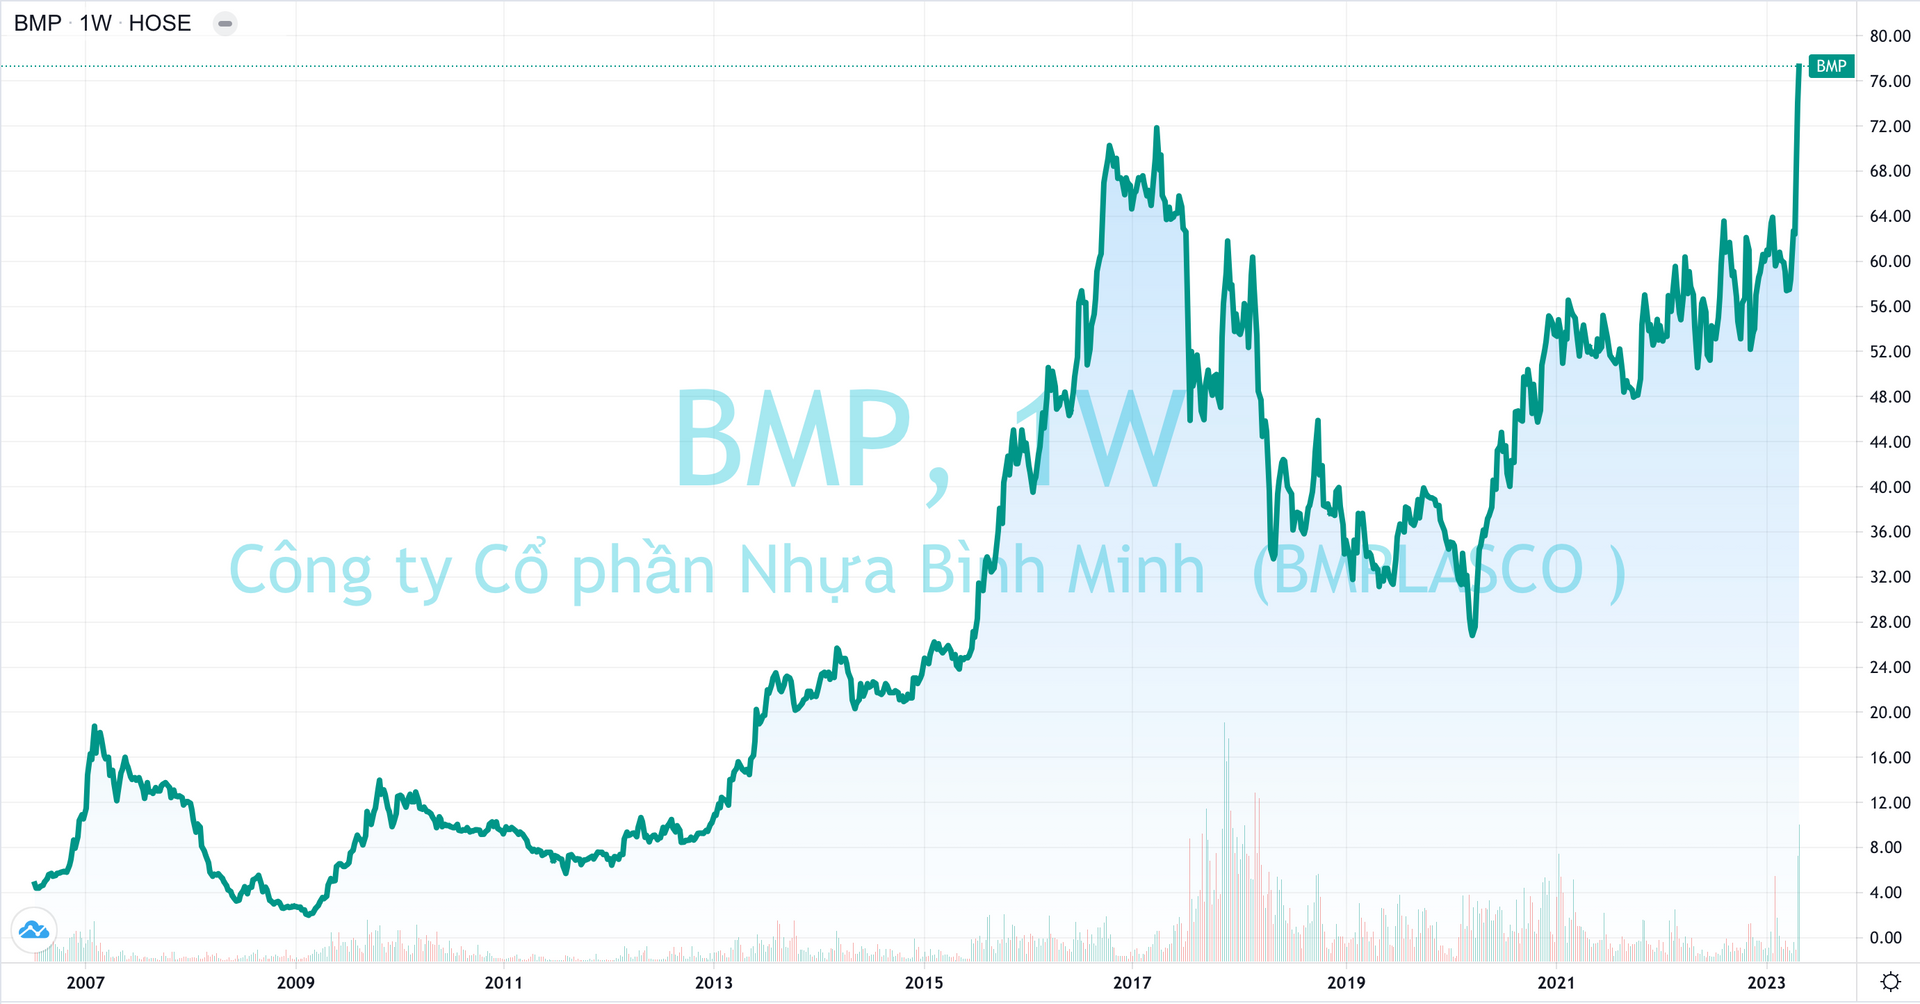 “Đại gia” Thái Lan lãi lớn với thương vụ thâu tóm Nhựa Bình Minh (BMP) - Ảnh 1.